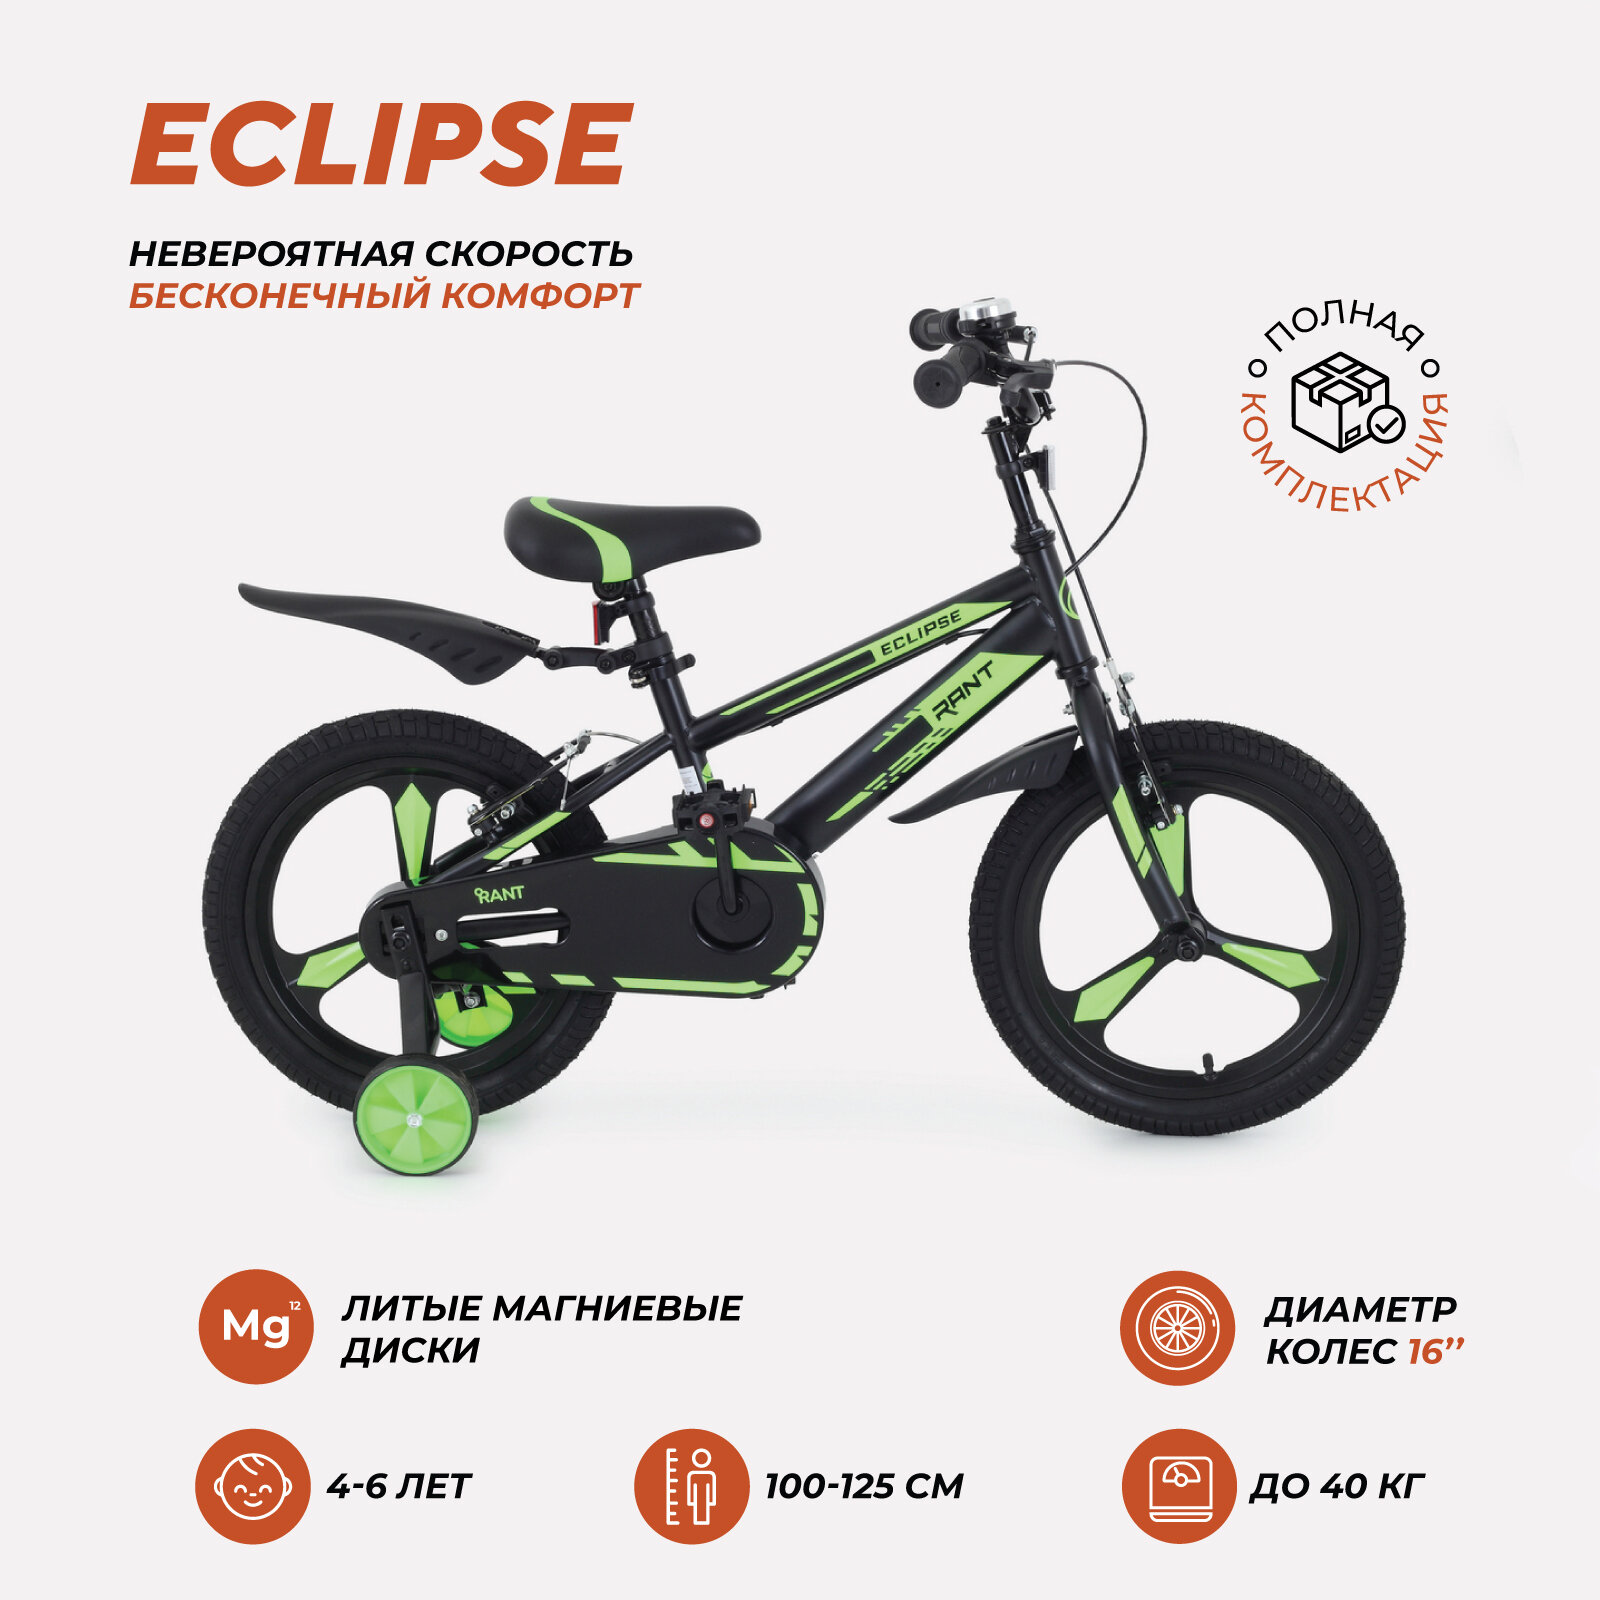 Велосипед двухколесный детский RANT "Eclipse" черно-зеленый 16"